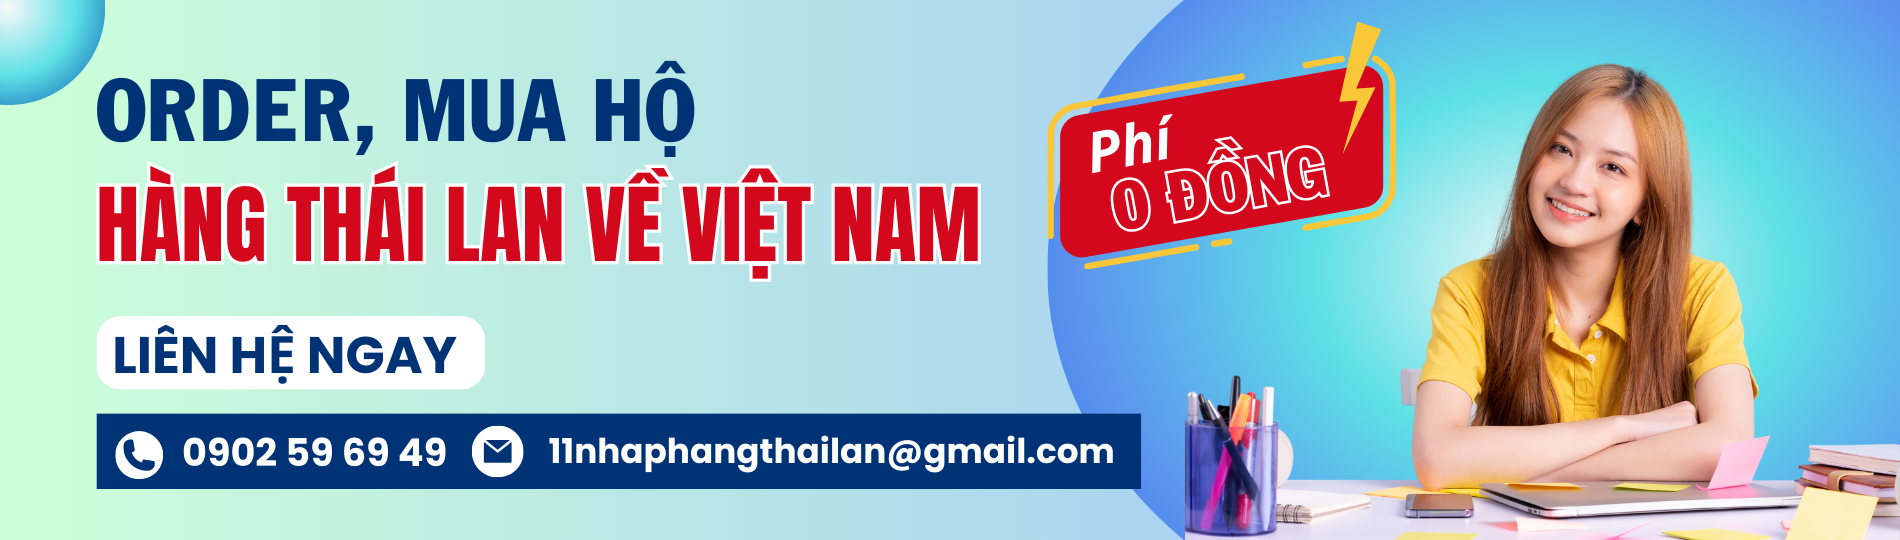 order mua hộ hàng Thái Lan